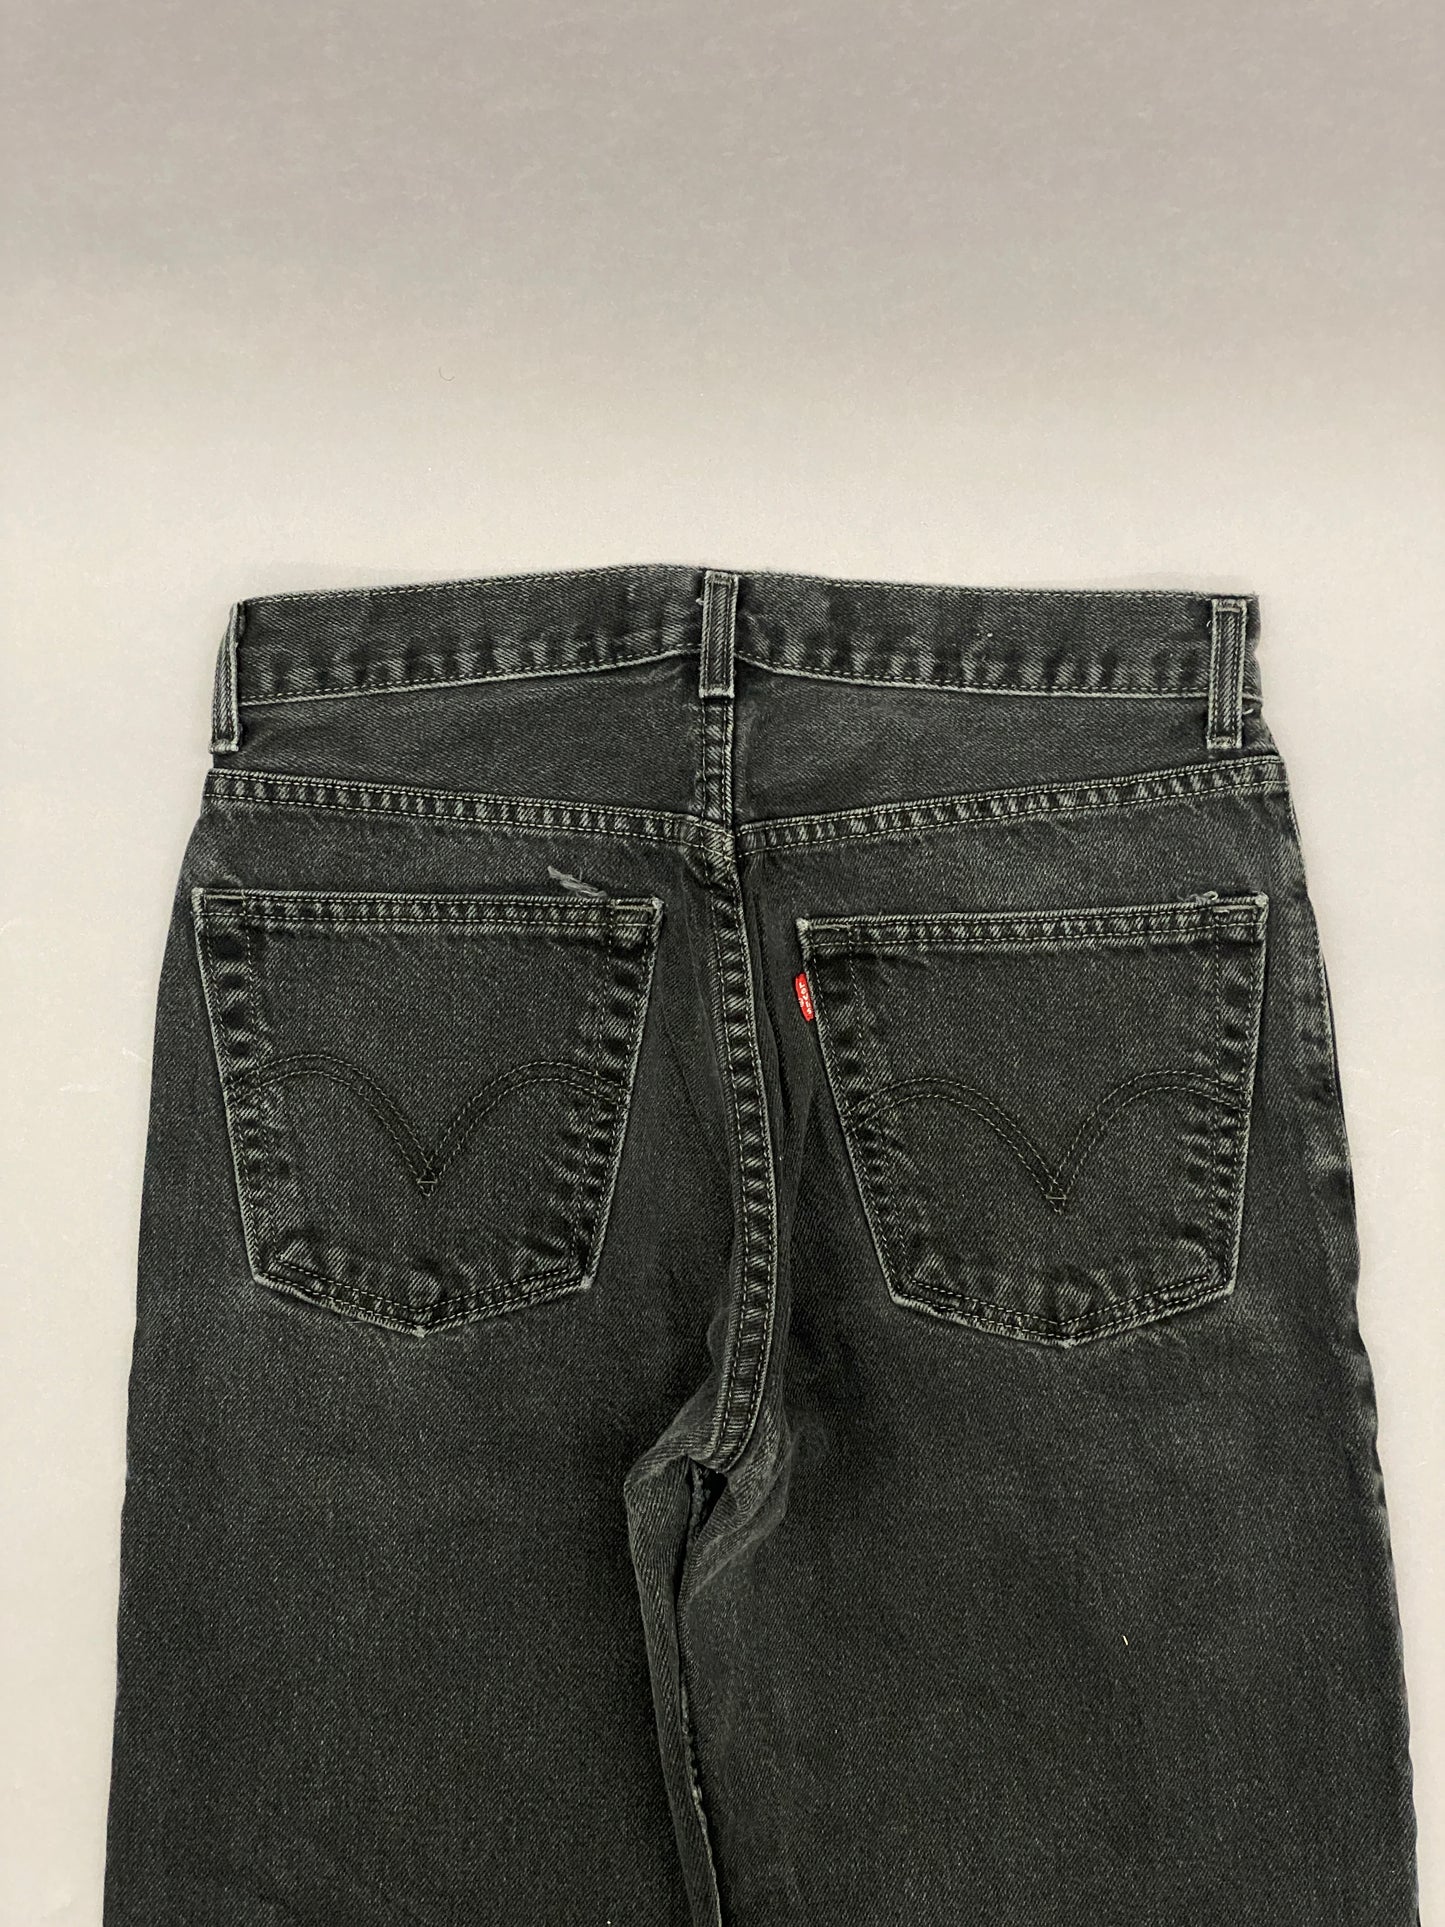 Levis 505 Vintage Jeans - 32 x 36